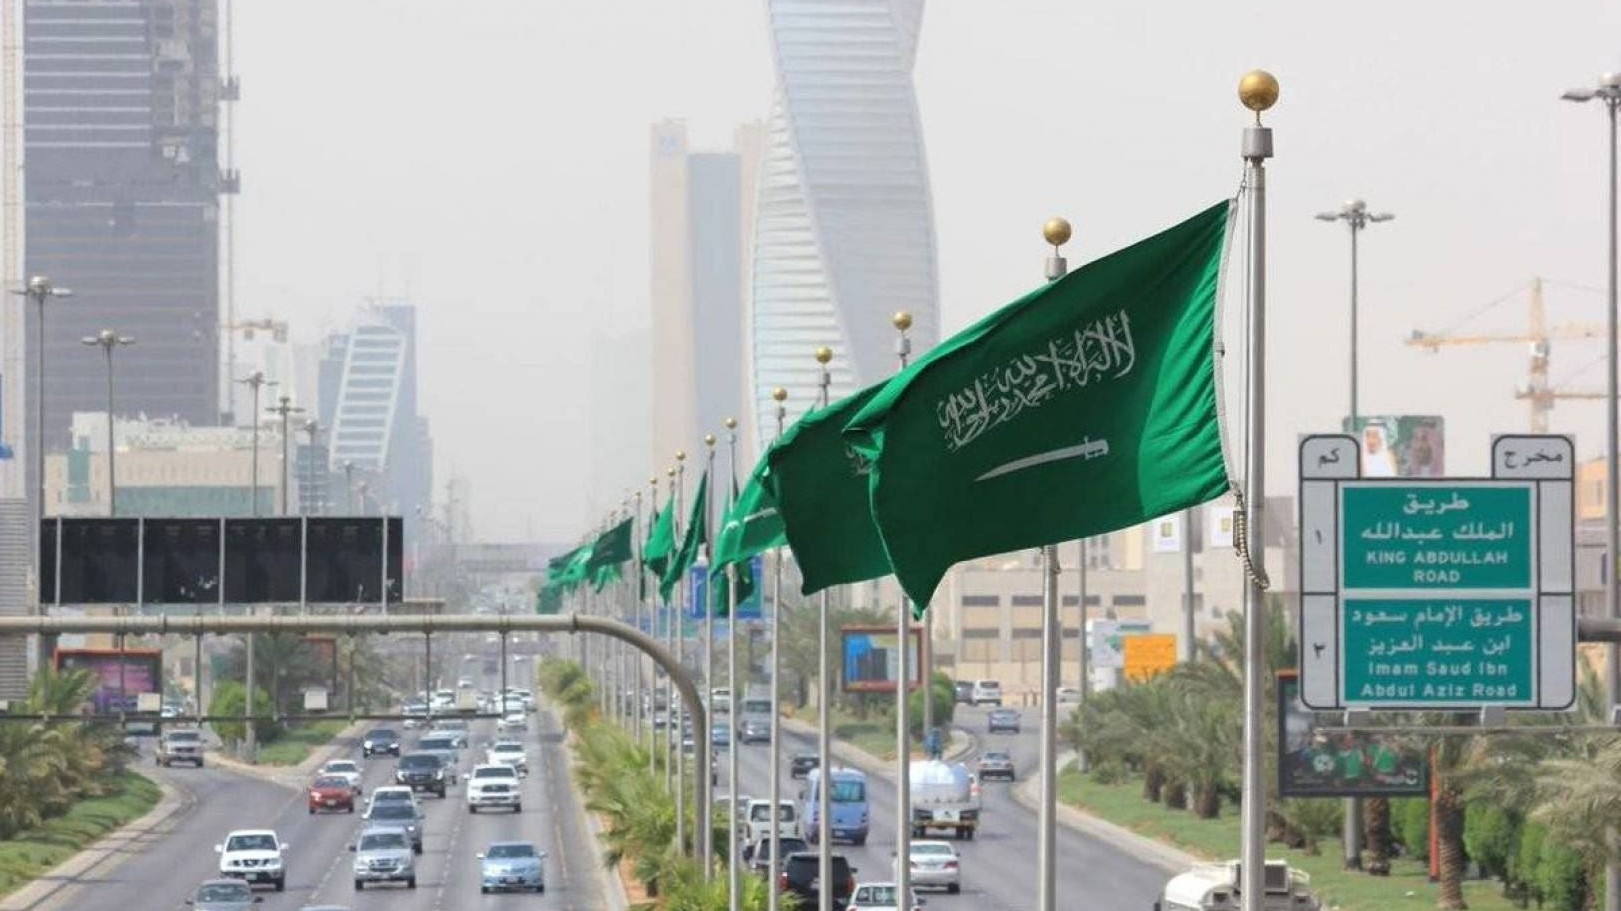 صورة عامة للعاصمة السعودية الرياض